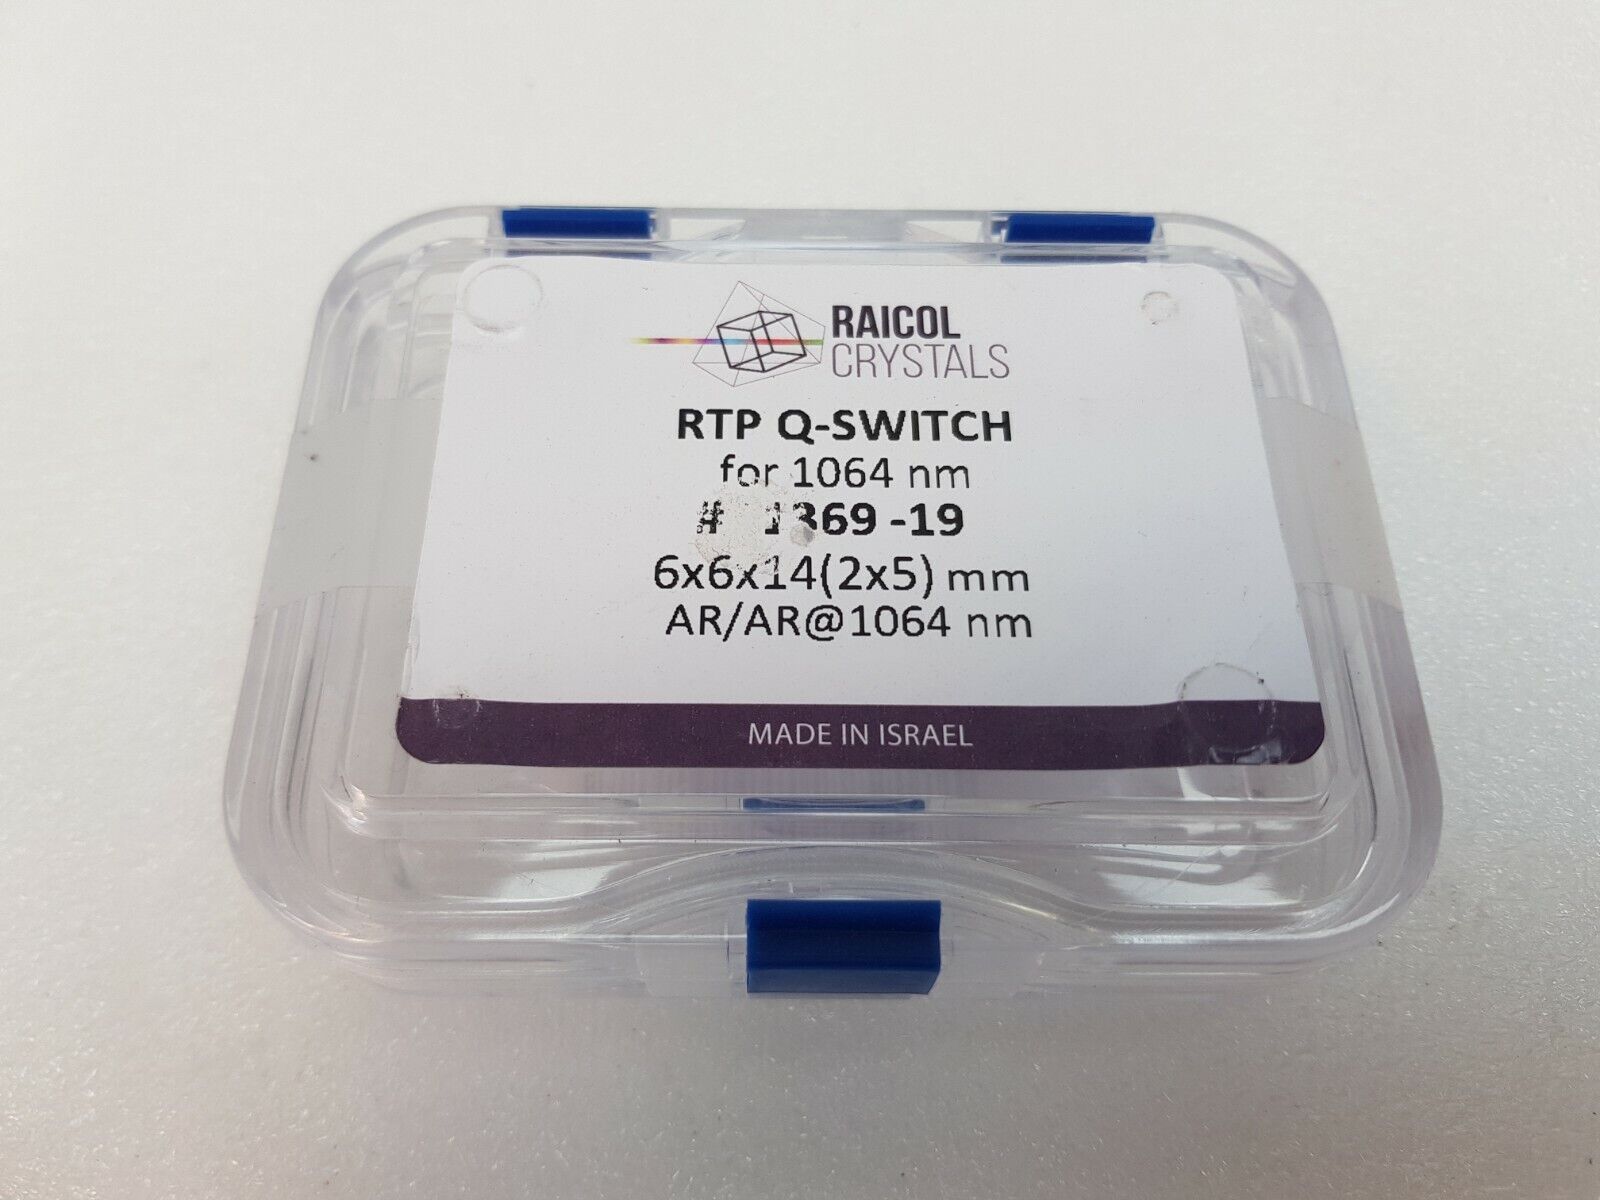 RAICOL CRYSTALS RTP Q-SWITCH for 1064 nm # 1369-19 6X6X14(2X5) mm, AR/AR@1064 nm